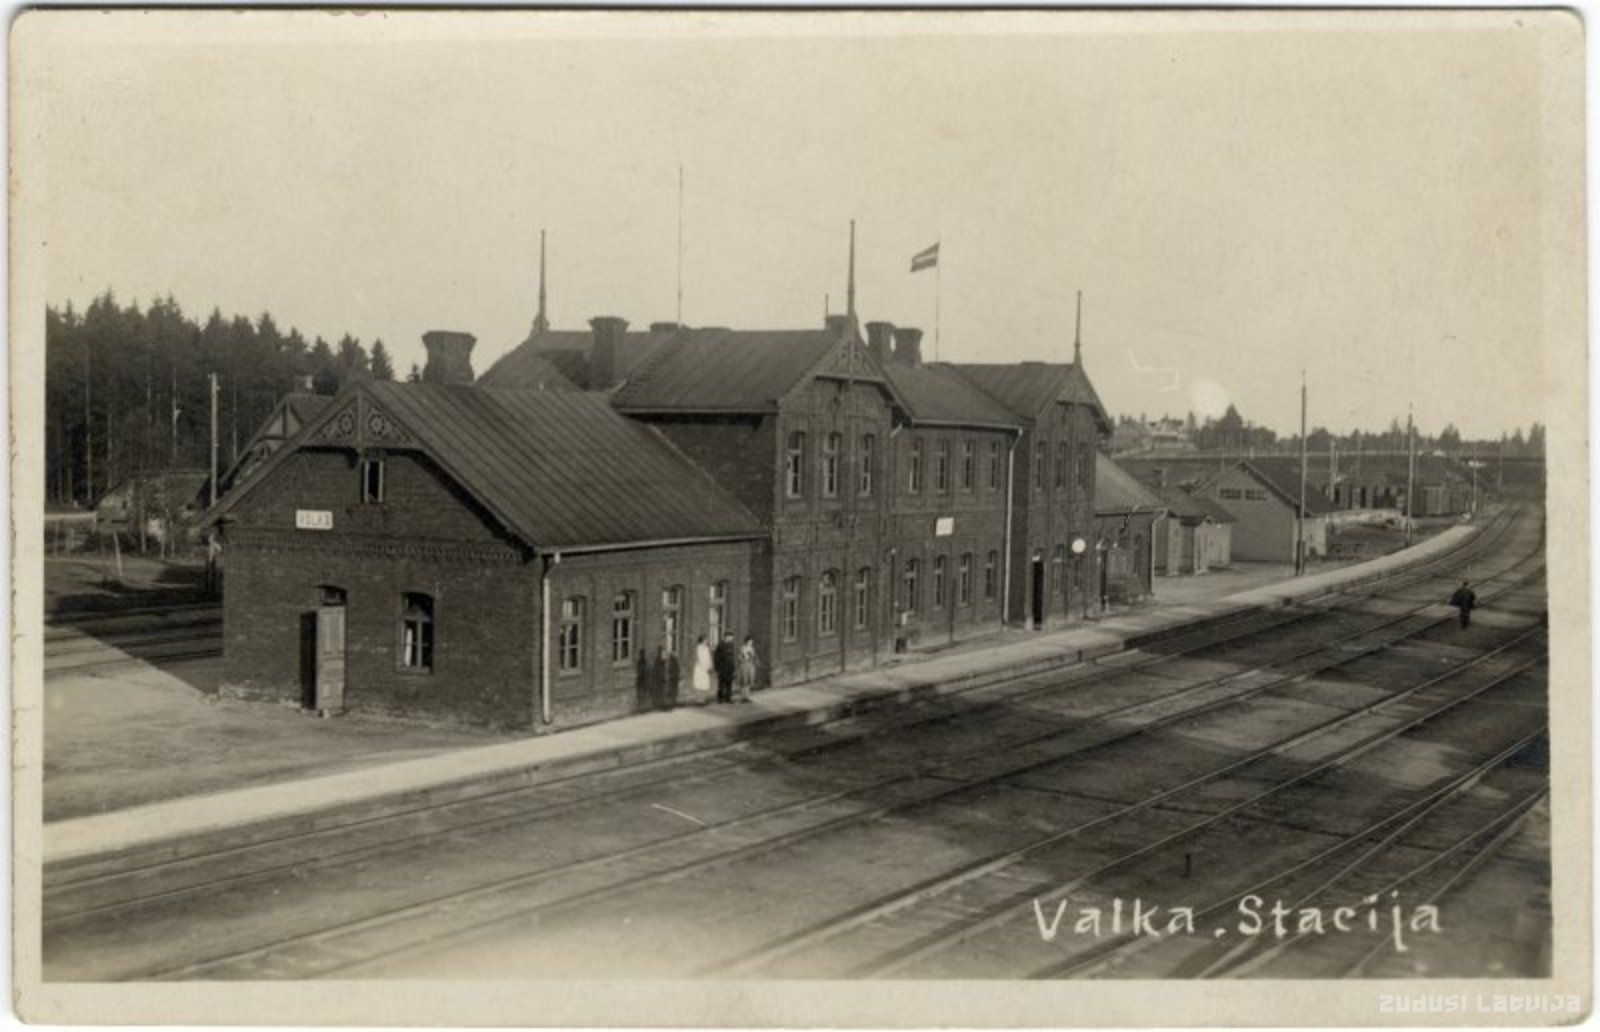 Valkas Station